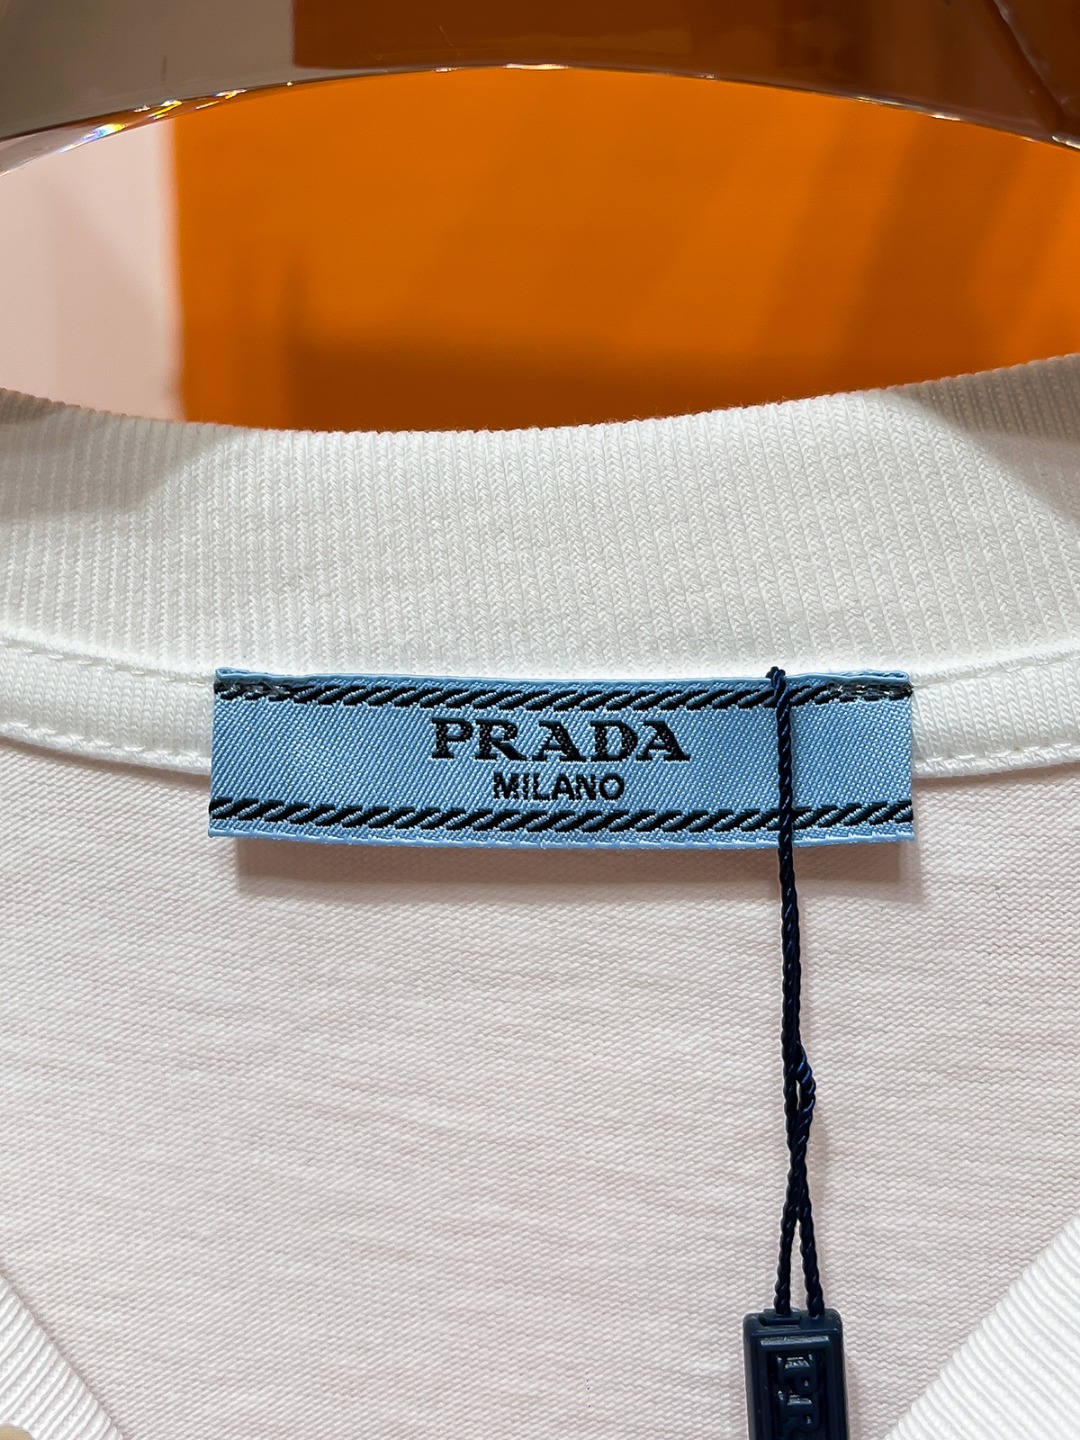 PRADA#24春夏顶级专柜同步短袖T恤3标齐全采用客供进口100%-32支双股新疆棉面料制成专柜原版面